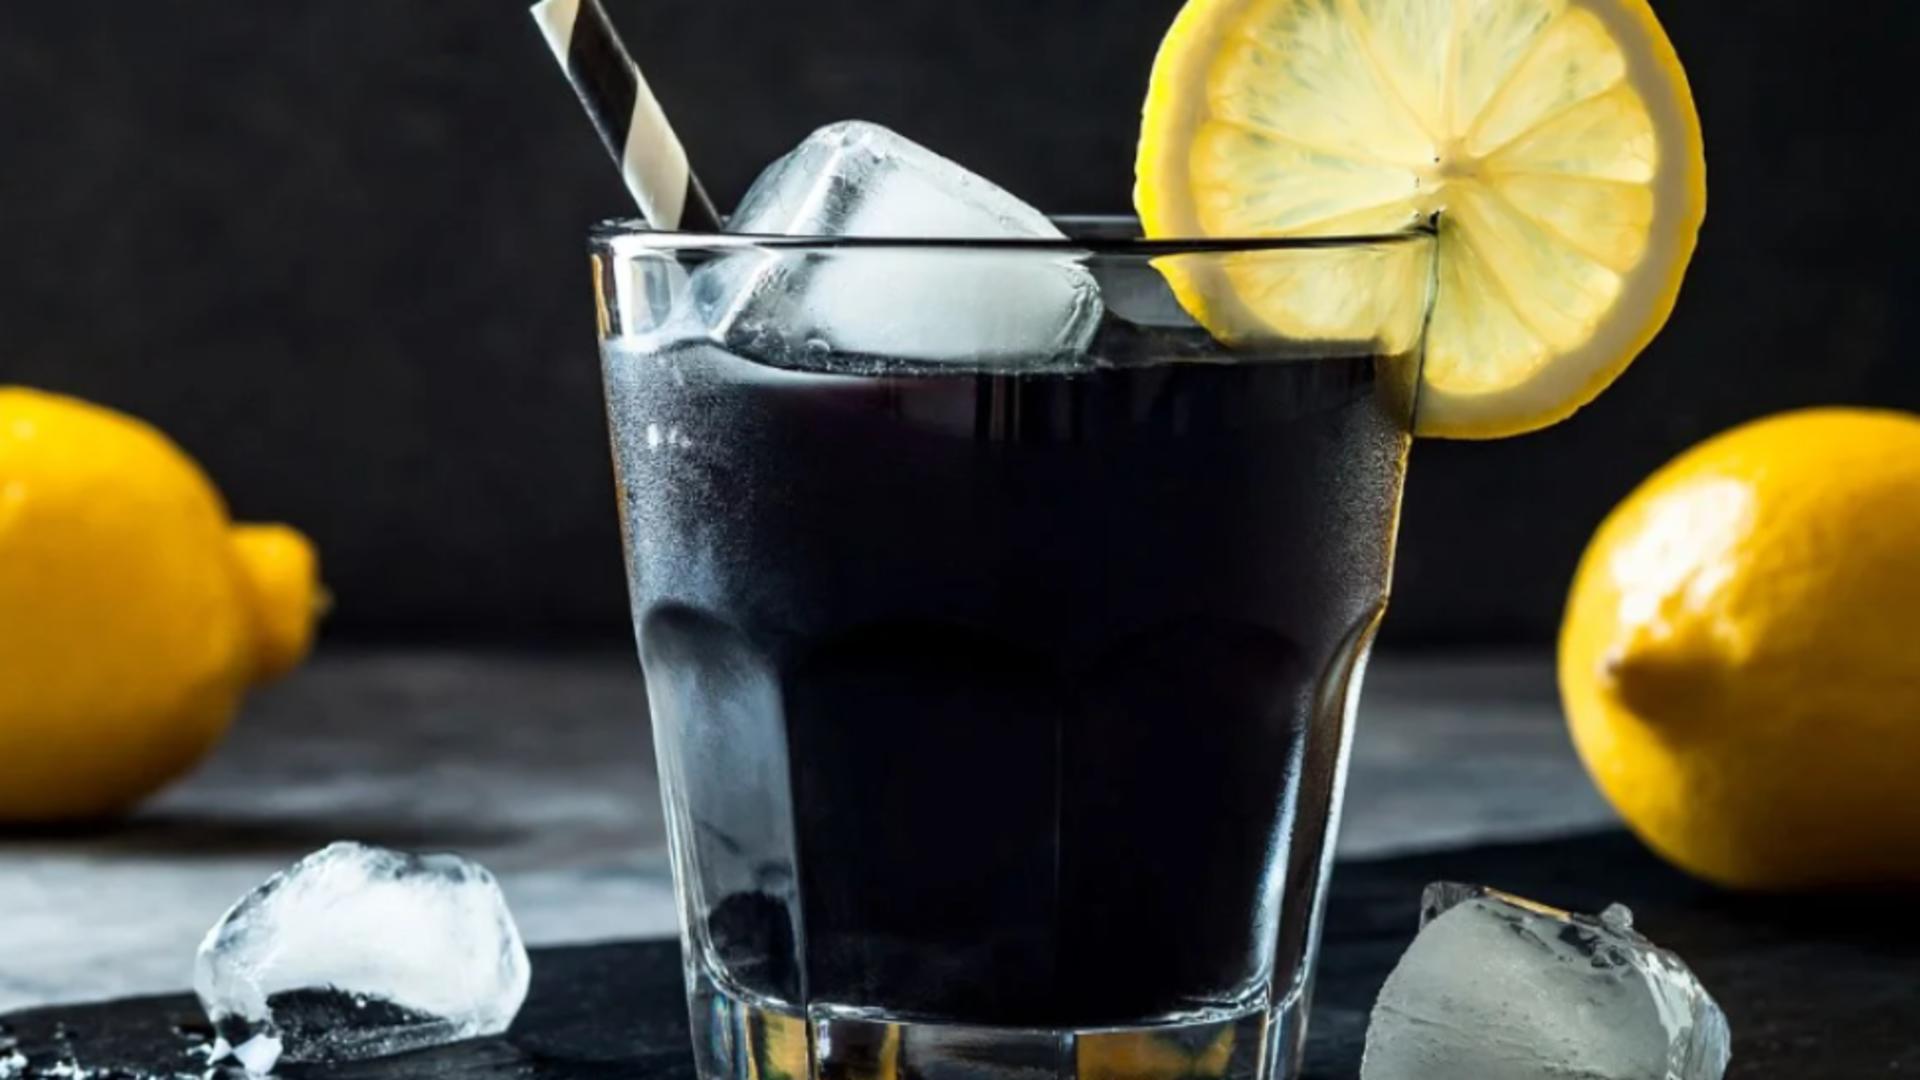 Băutura minune care elimină toxinele din organism și te scapă și de kilogramele în plus. Cum prepari limonada neagră